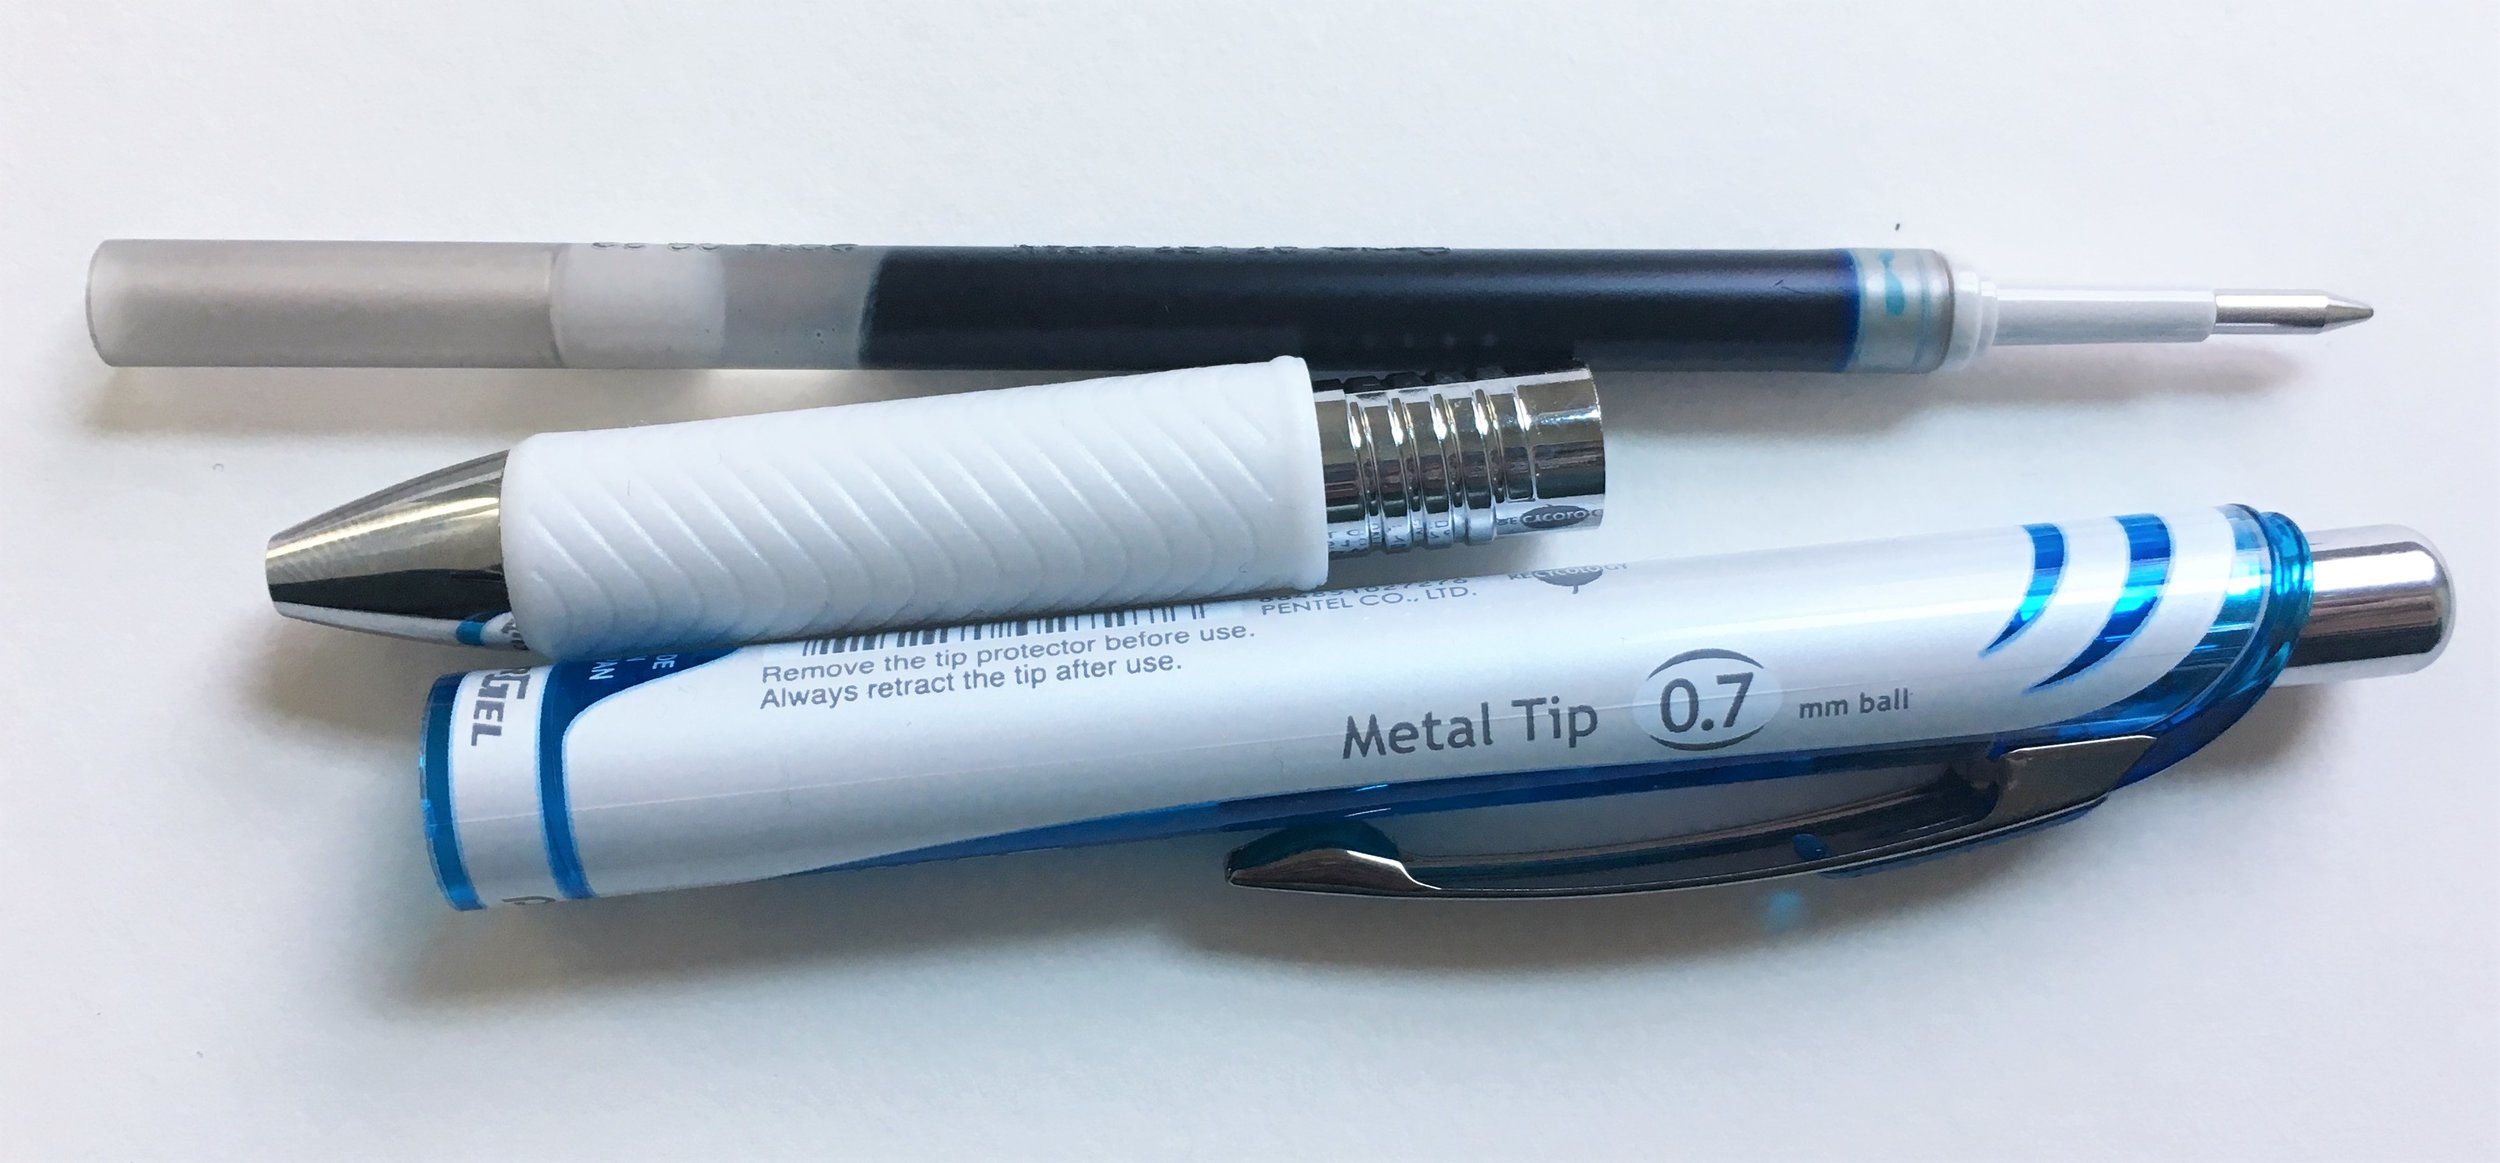 Pentel EnerGel Clena 0.3 mm Gel Ink Pen Review — The Pen Addict